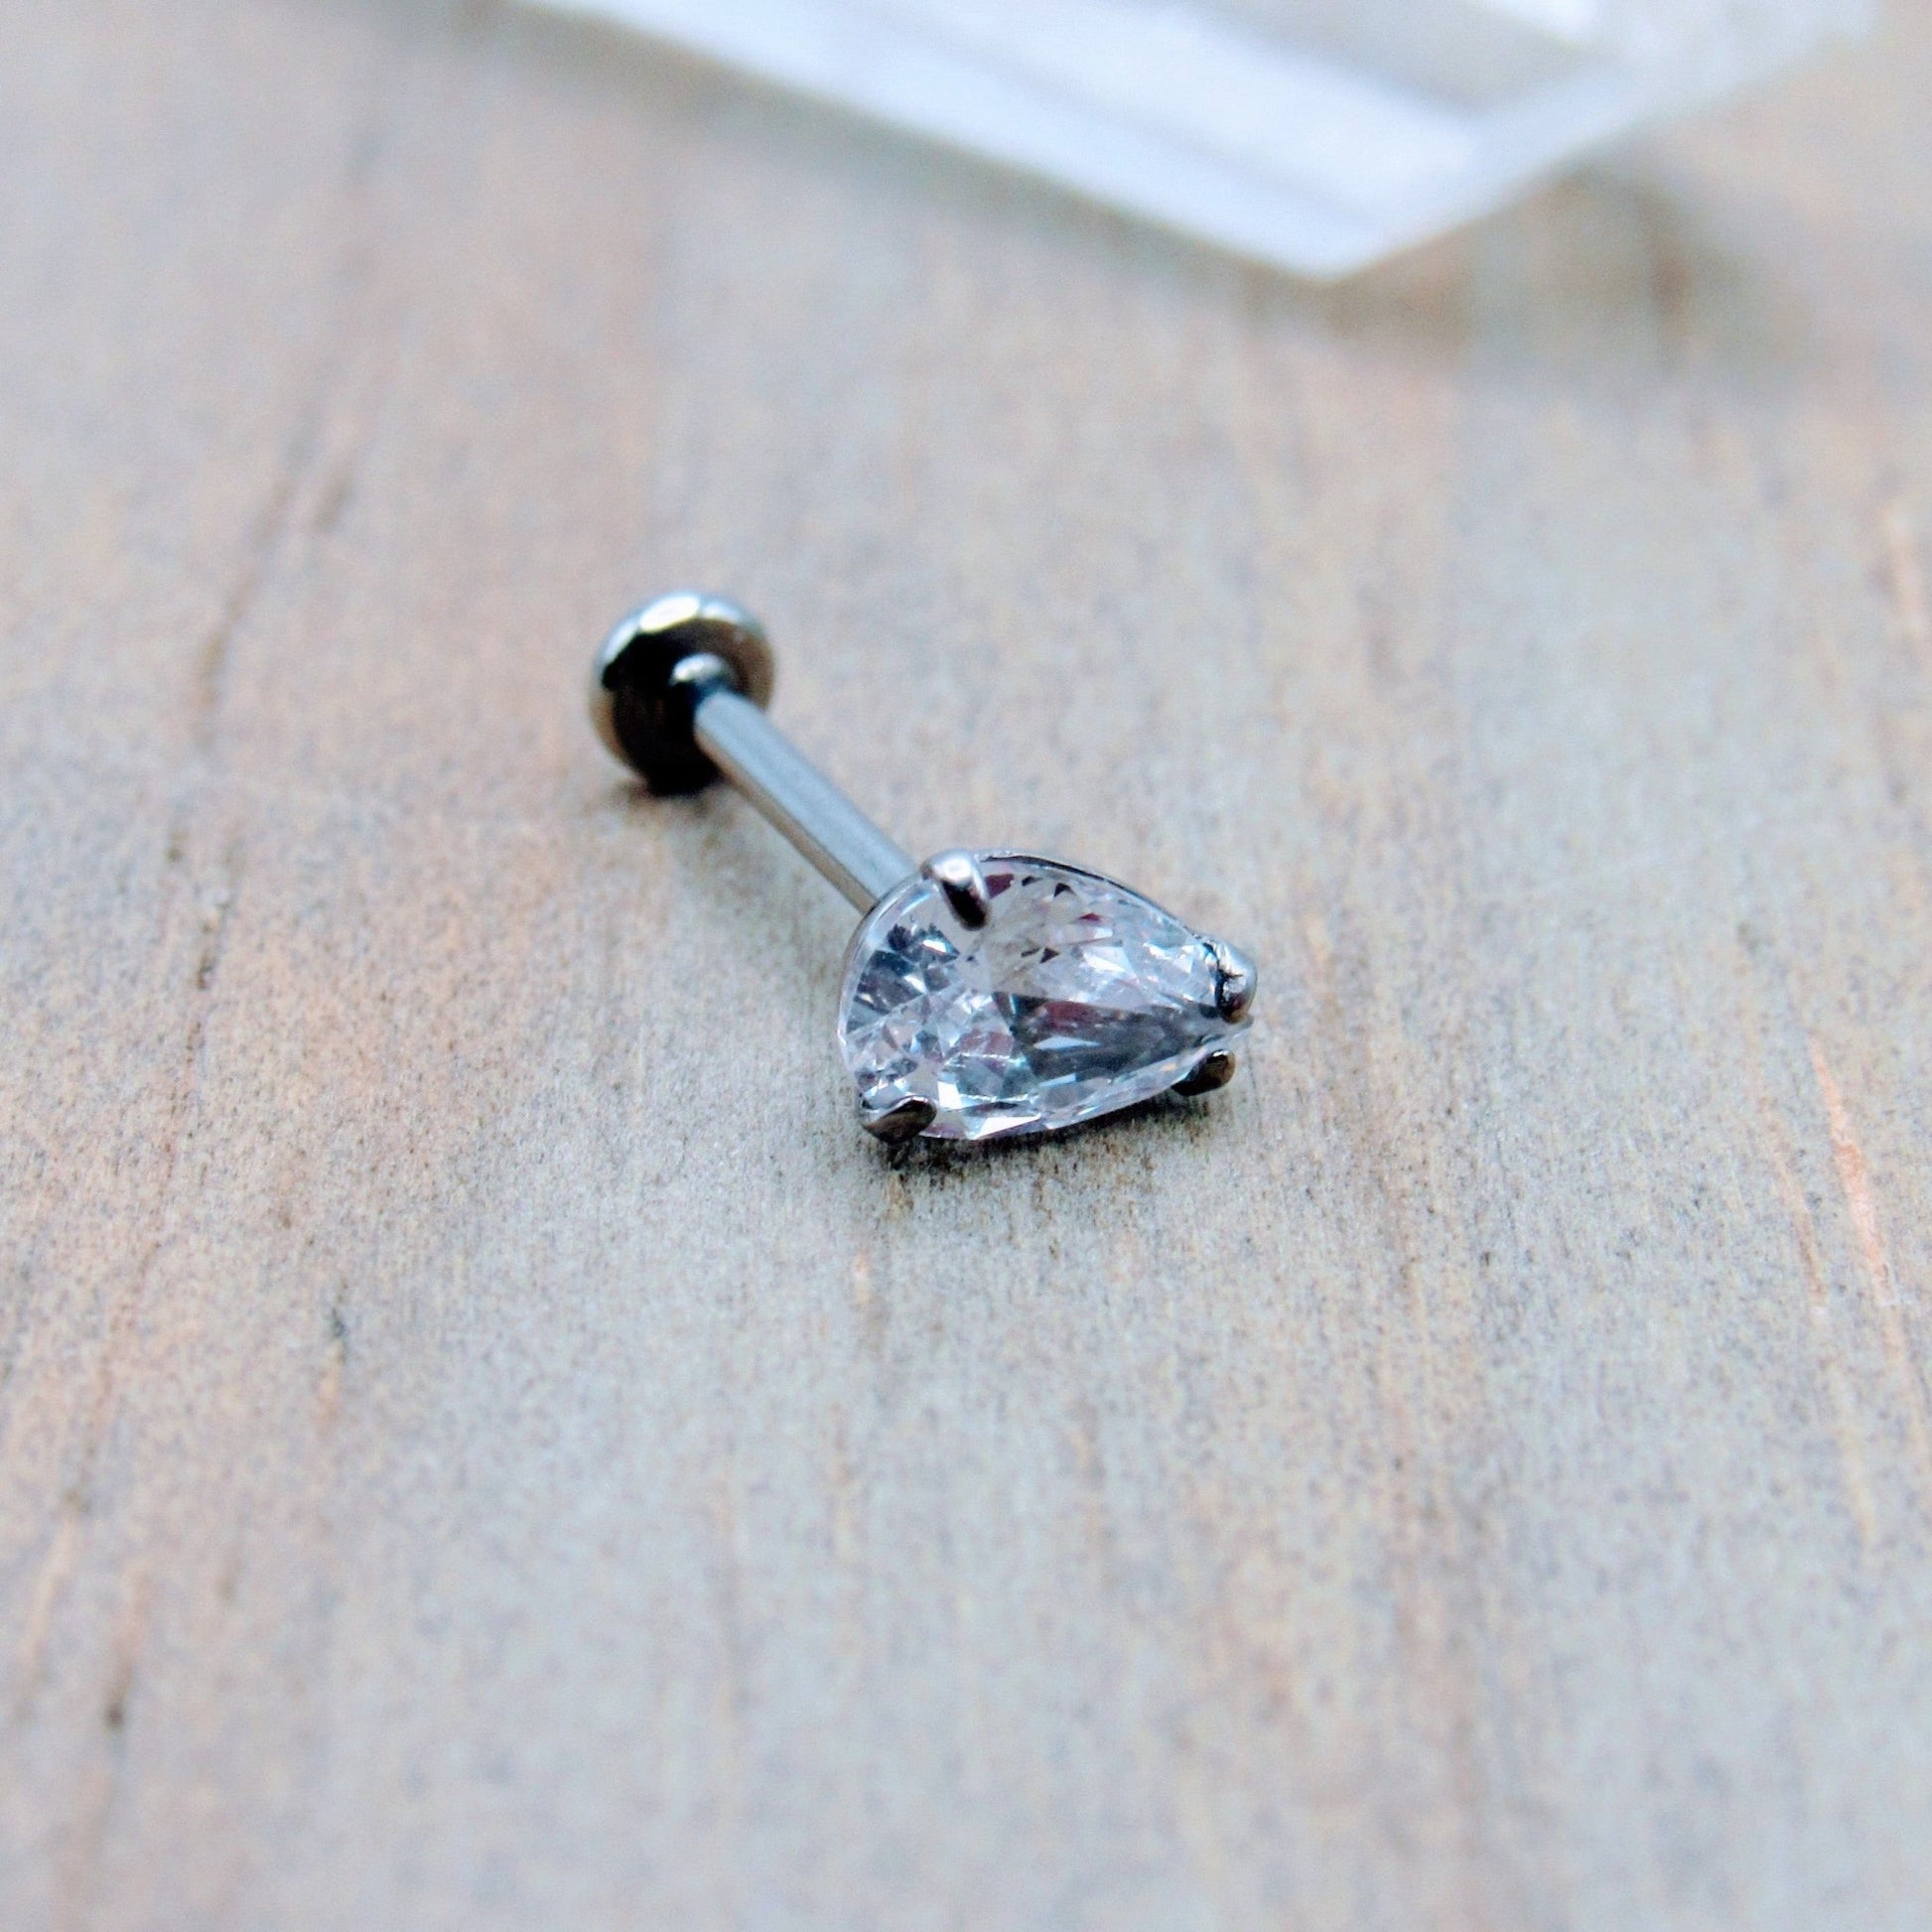 16g Titanium flat back earring stud pear teardrop shaped crystal clear gemstone conch helix philtrum earlobe earring 1/4"-5/16" - Siren Body Jewelry